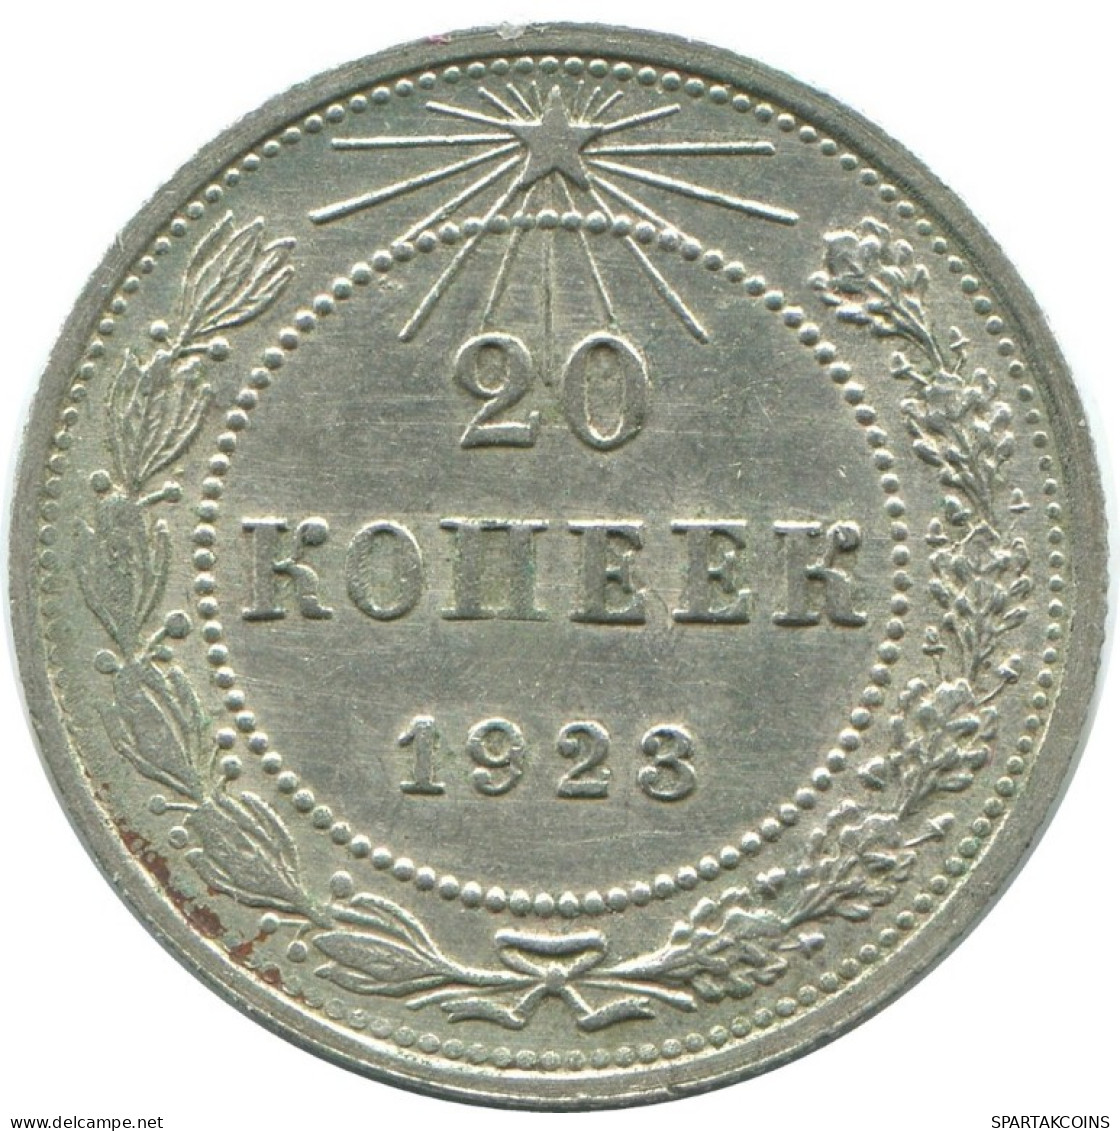 20 KOPEKS 1923 RUSSLAND RUSSIA RSFSR SILBER Münze HIGH GRADE #AF679.D.A - Rusia